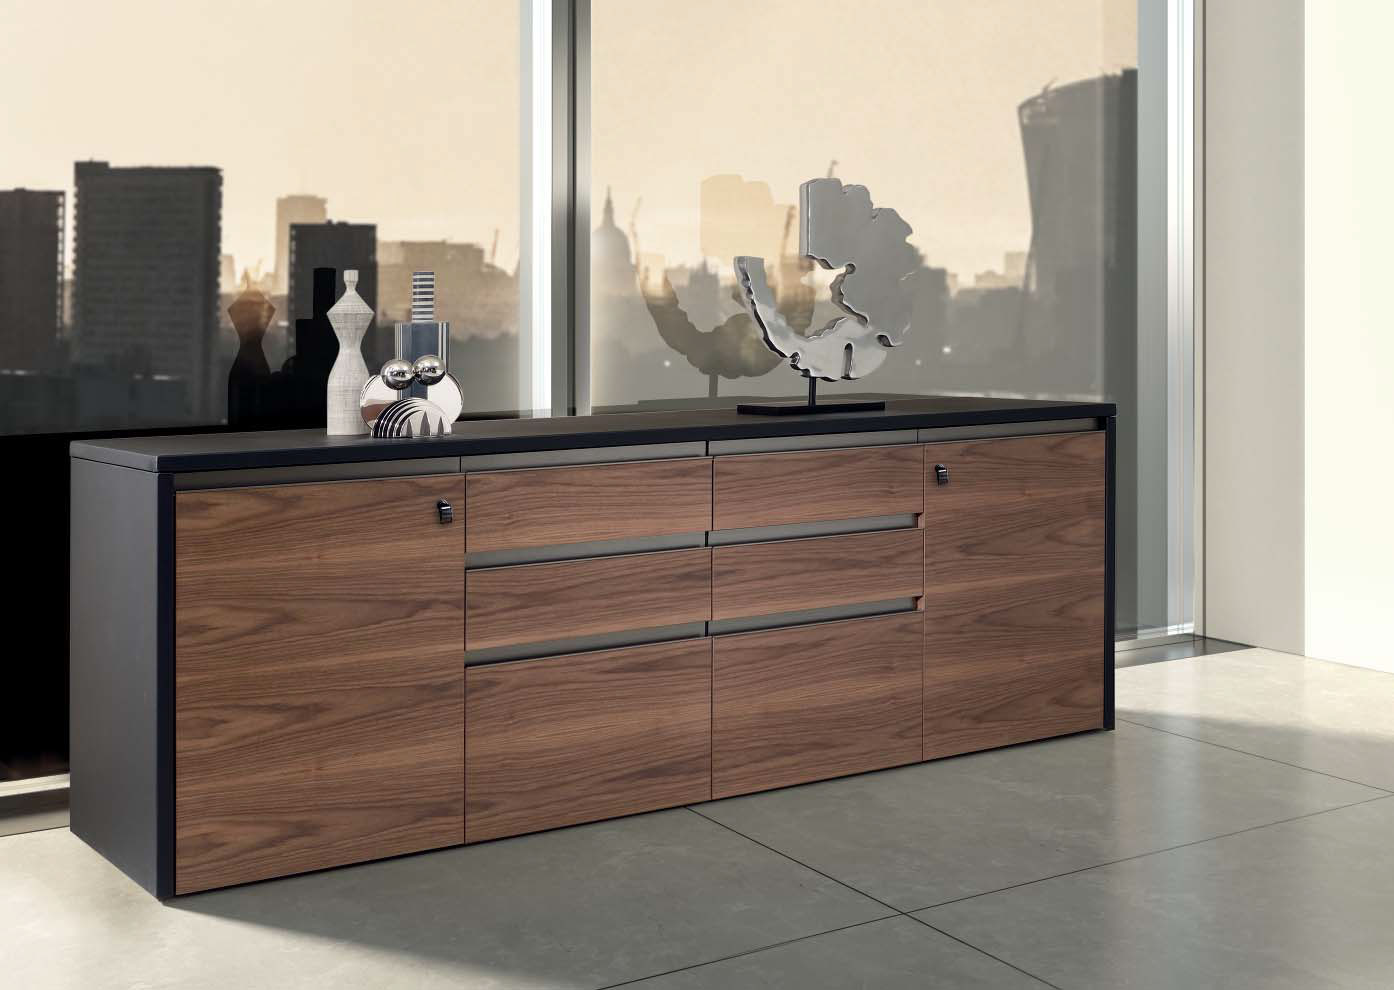 Meuble bas à 4 compartiments avec portes et tiroirs pour bureau directionnel. Vente en ligne de meubles de bureau haut de gamme made in italy.